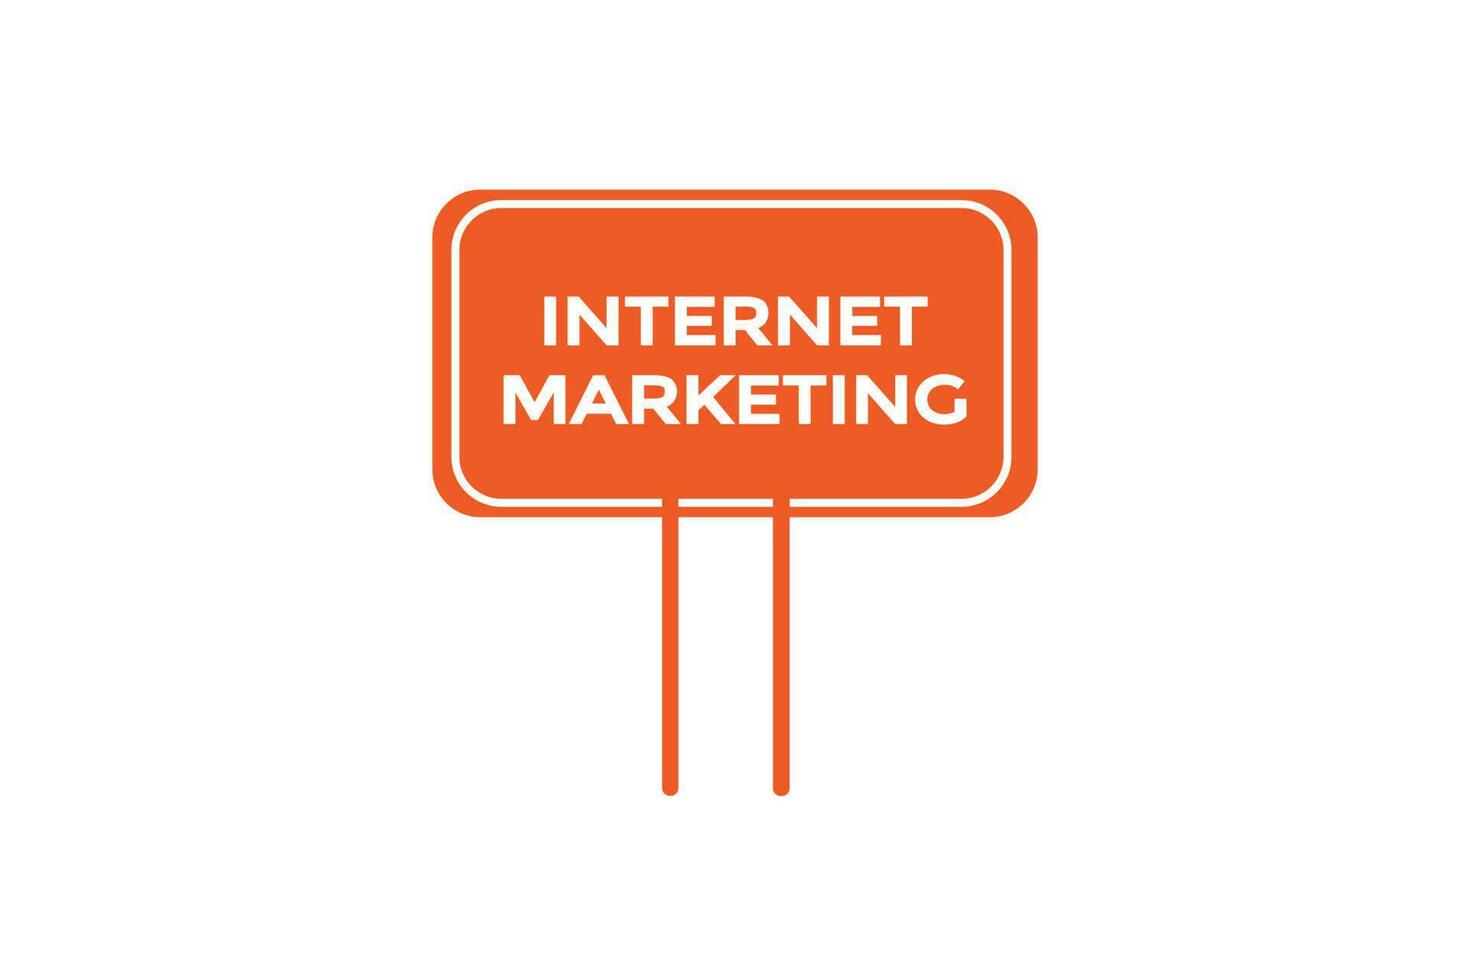 Internet marketing vectors.sign etichetta bolla discorso Internet marketingl vettore